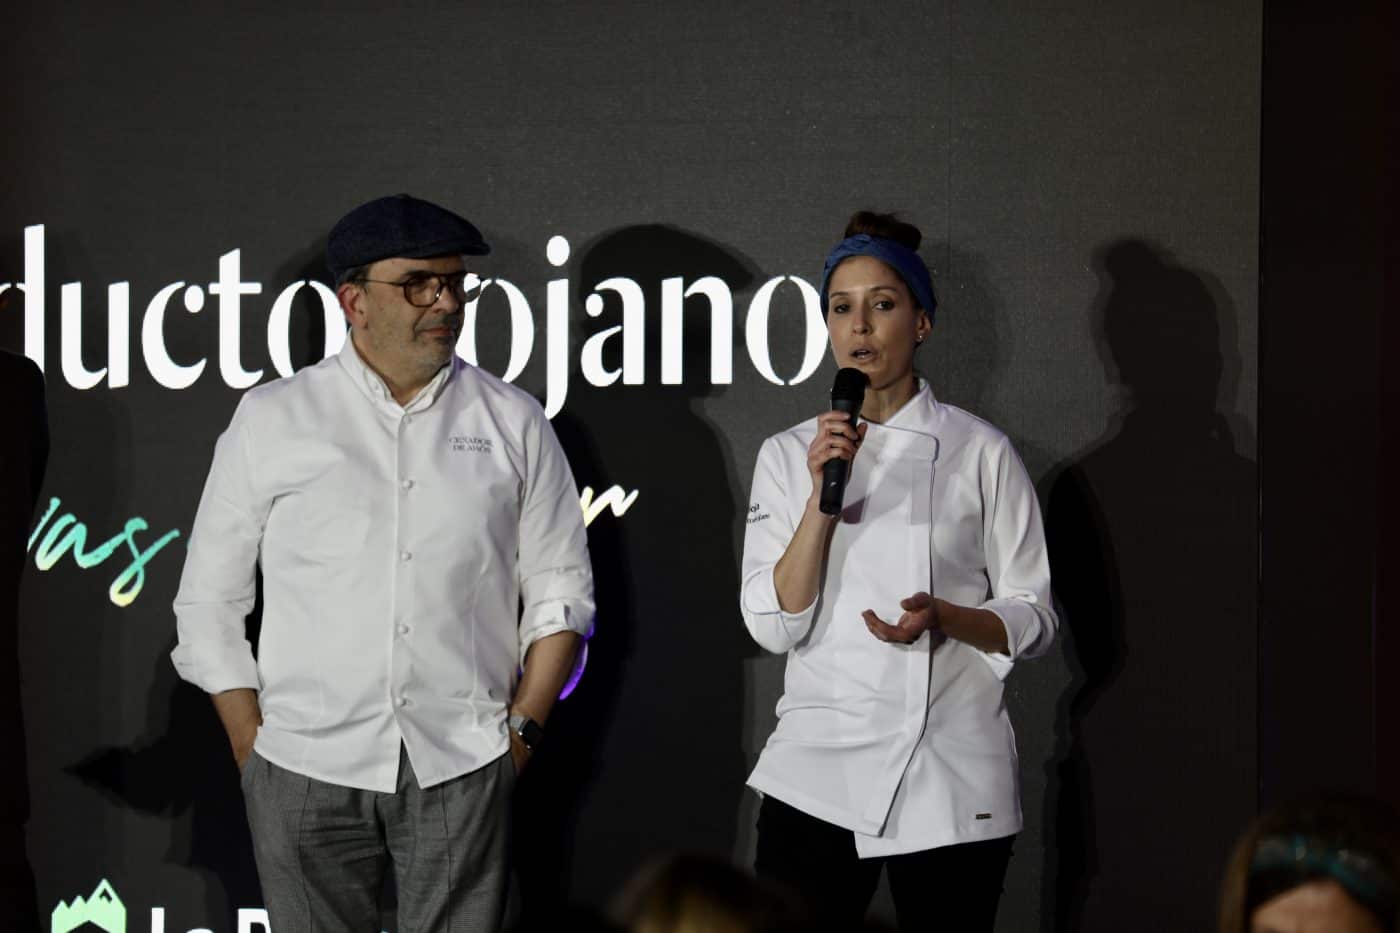 La cocina riojana triunfa en Madrid con la cena maridaje ofrecida por seis cocineros estrella Michelin 10